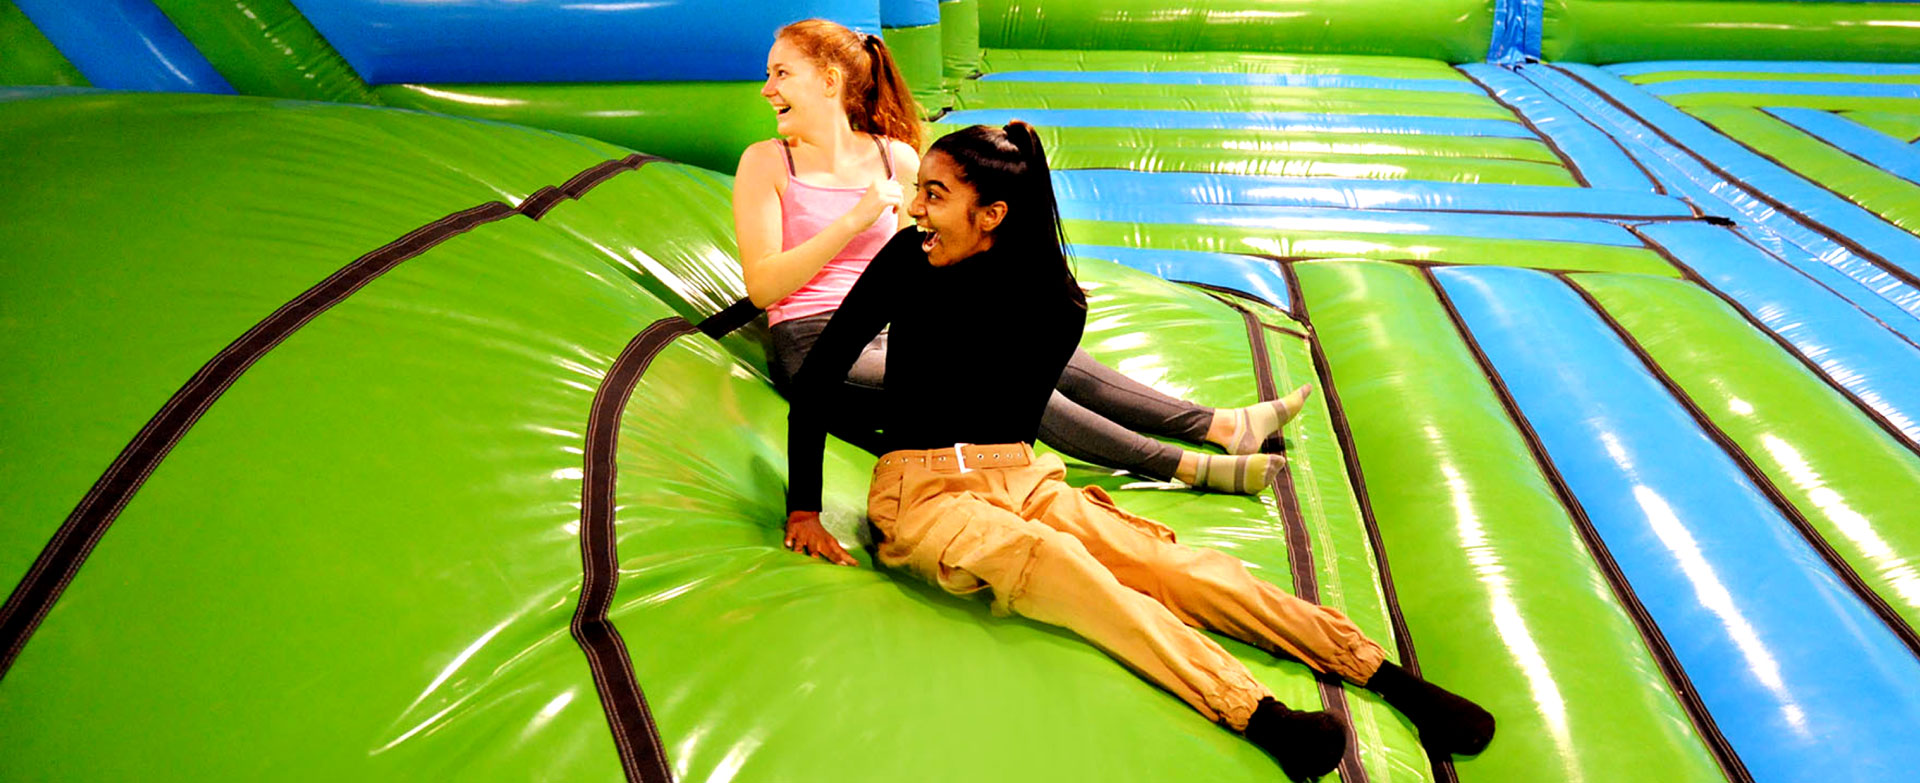 kids having fun bouncy in inflatable park.